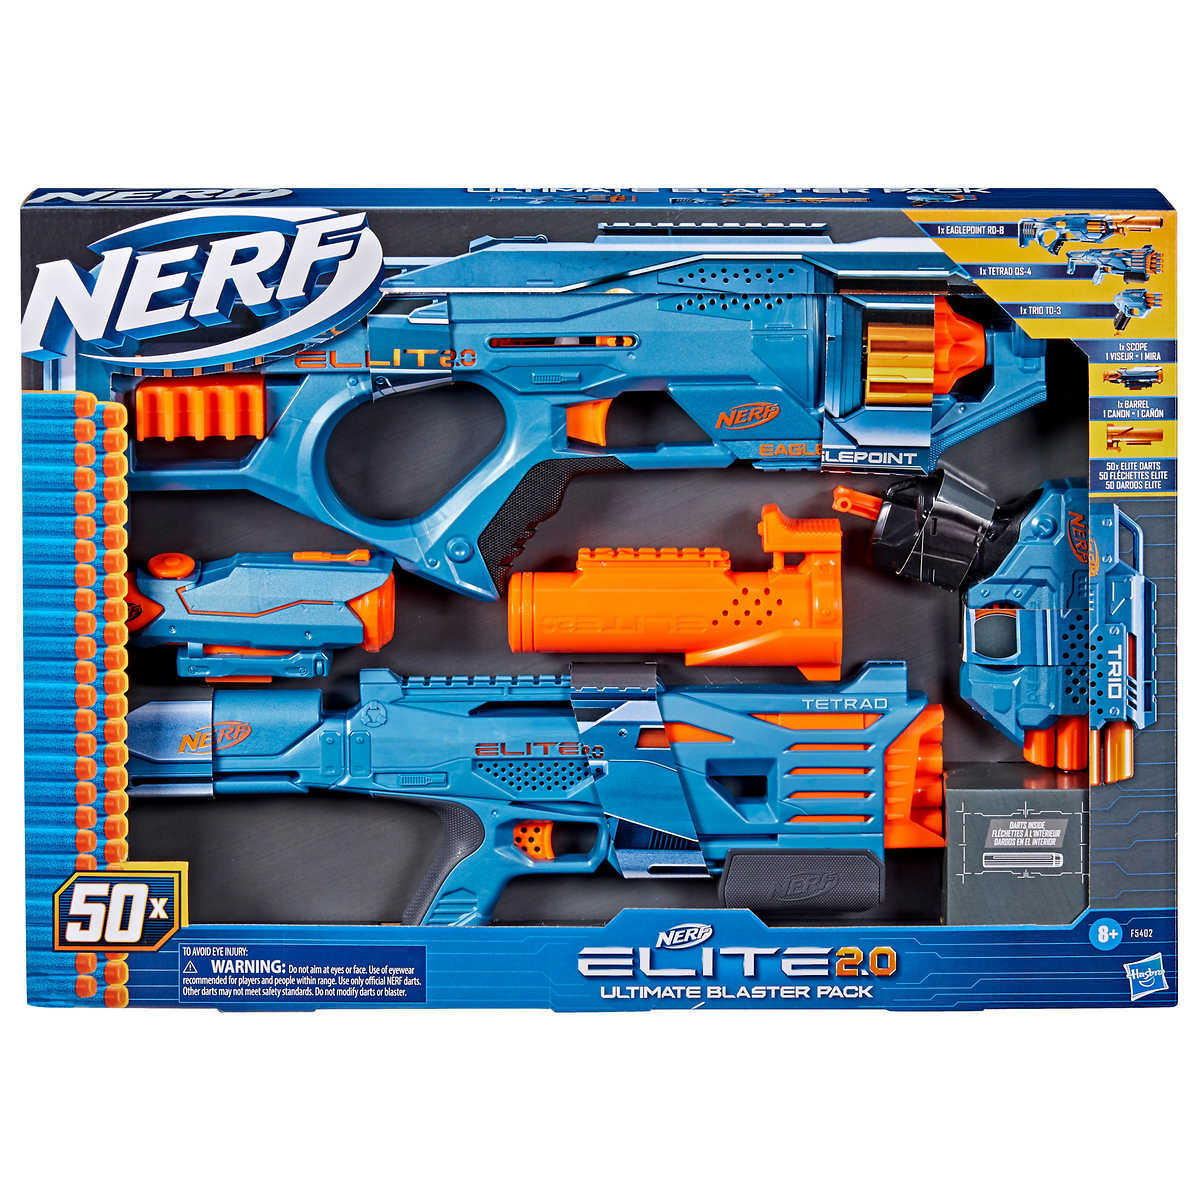 Lançador Nerf Elite 2.0 Eaglepoint Rd-8 Com 16 Dardos -f0424